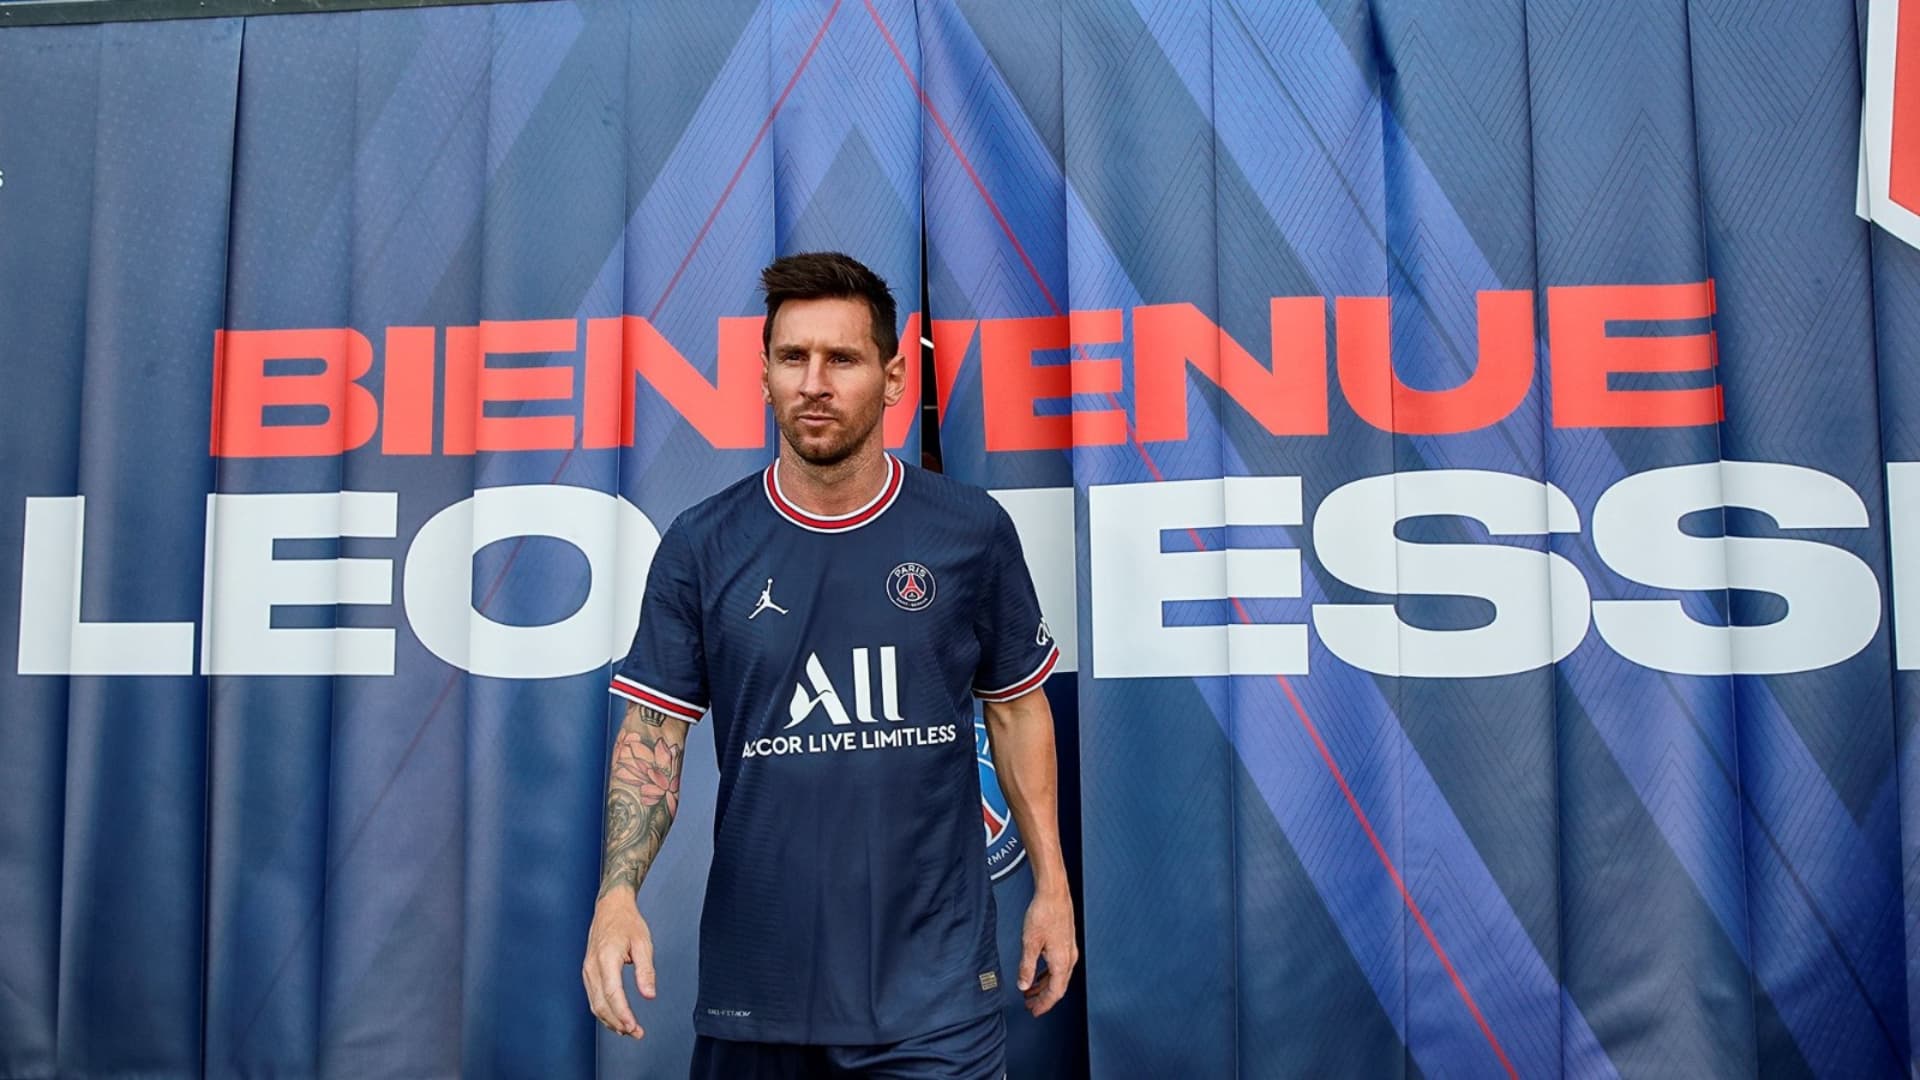 Estos son los productos de Lionel Messi en Paris Saint Germain